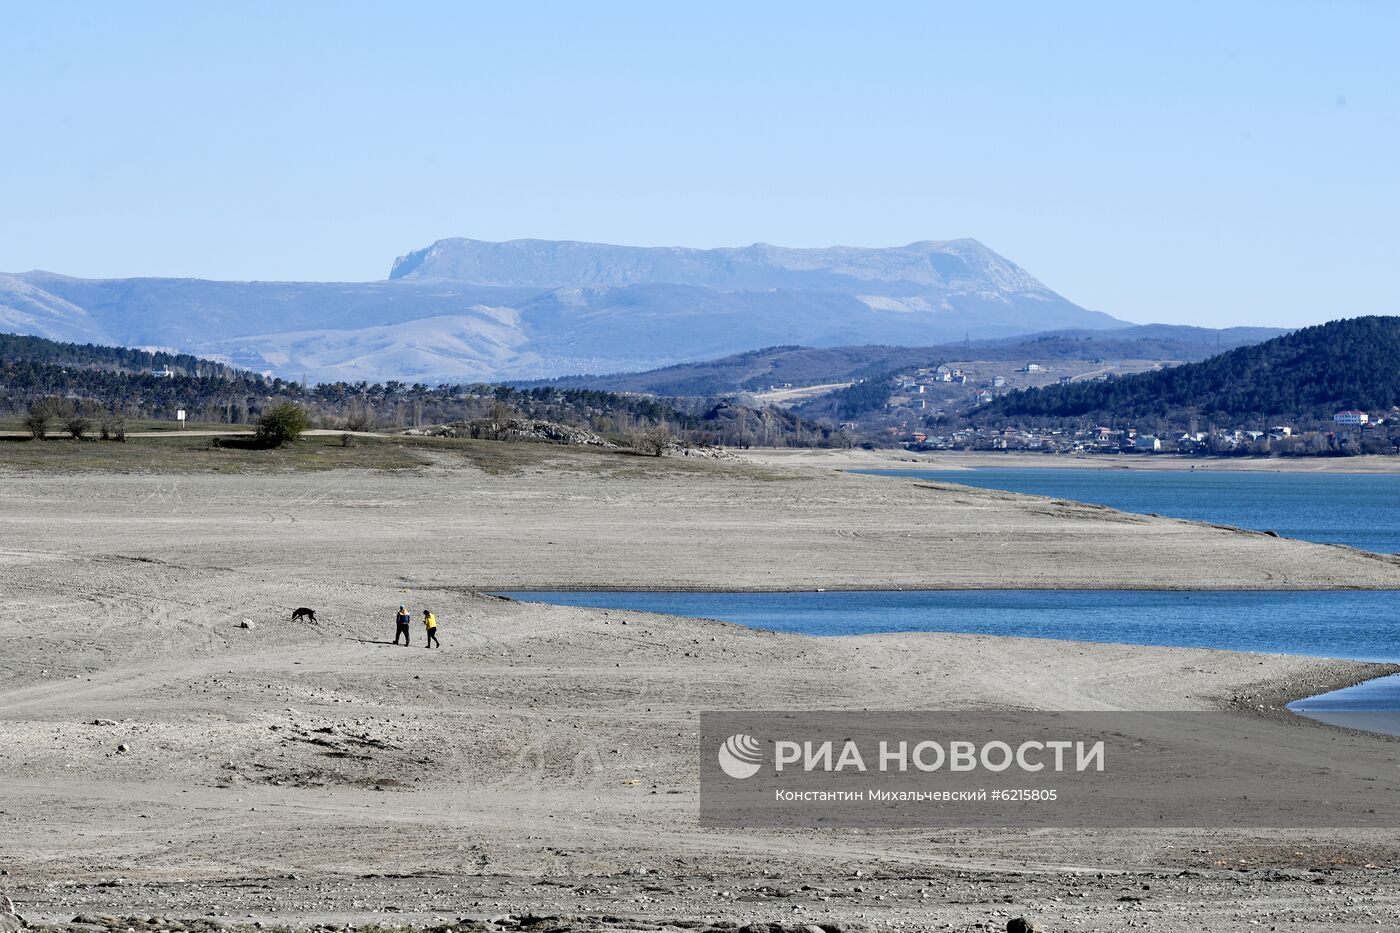 Симферопольское водохранилище в Крыму